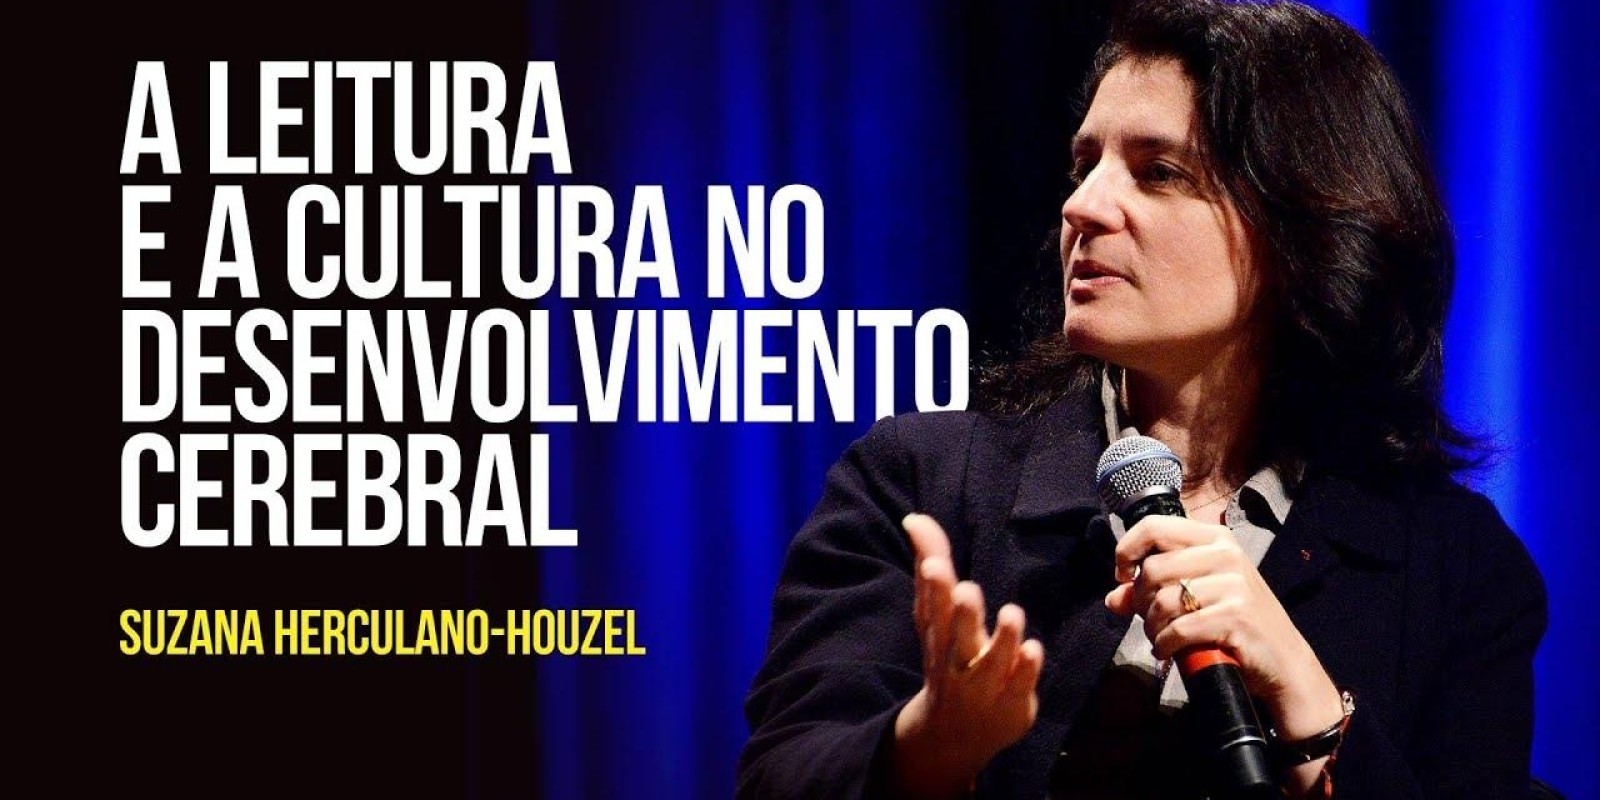 Suzana Herculano-Houzel - A leitura e a cultura no desenvolvimento cerebral